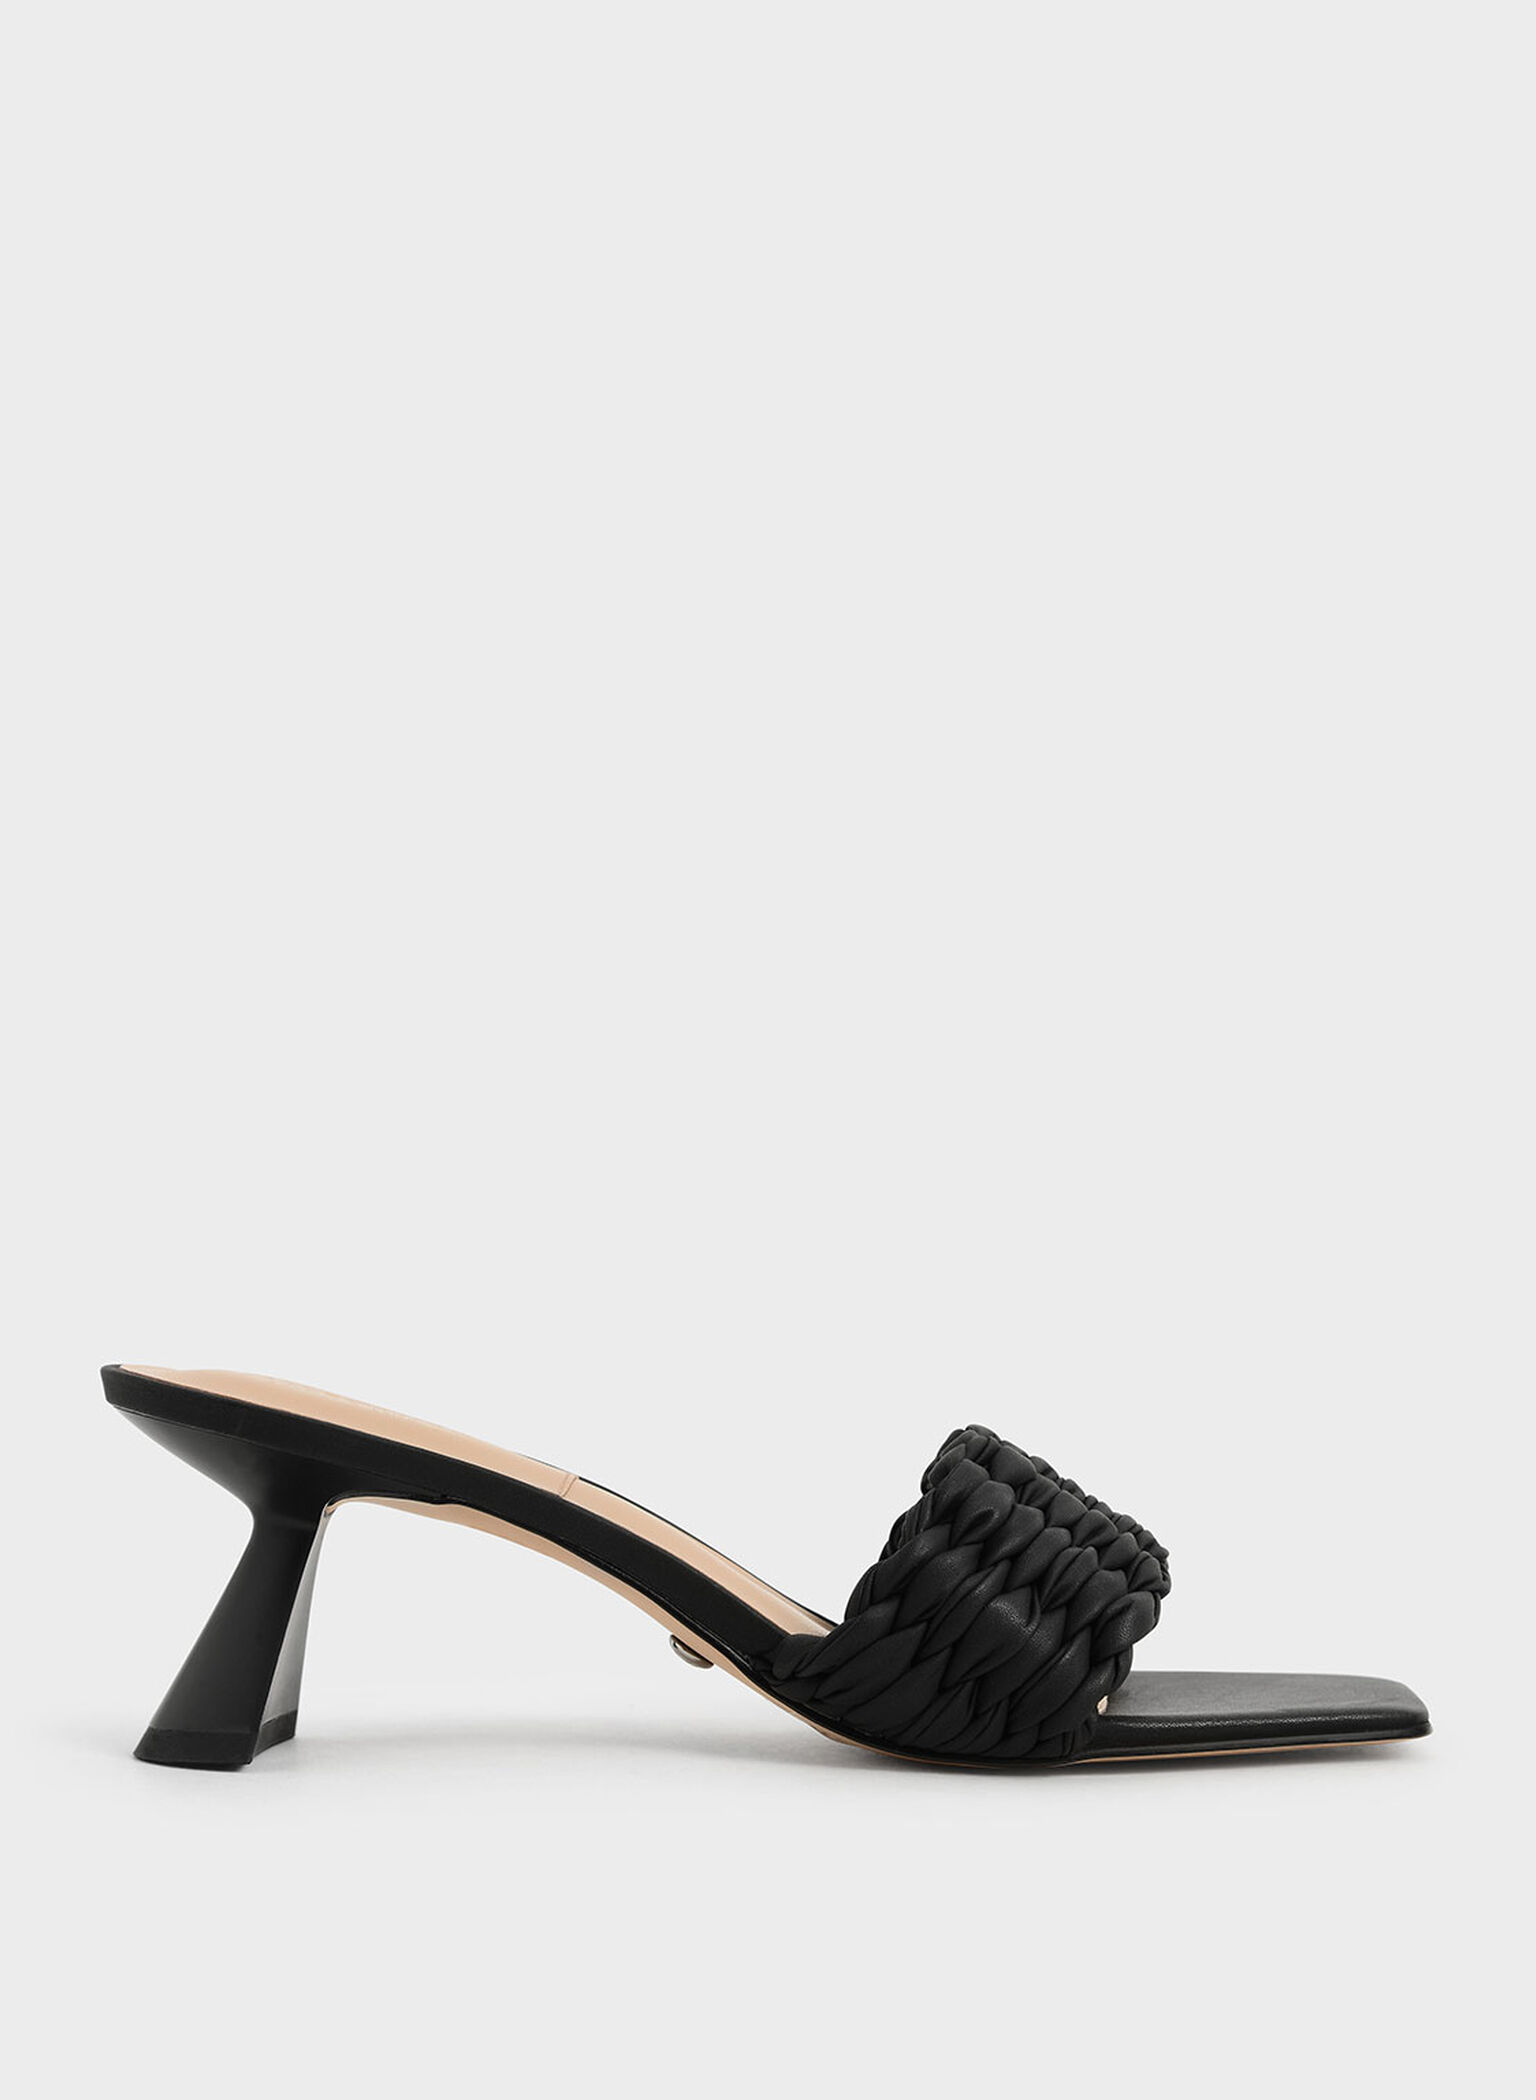 Pleated Sculptural Heel Sandals, Black, hi-res